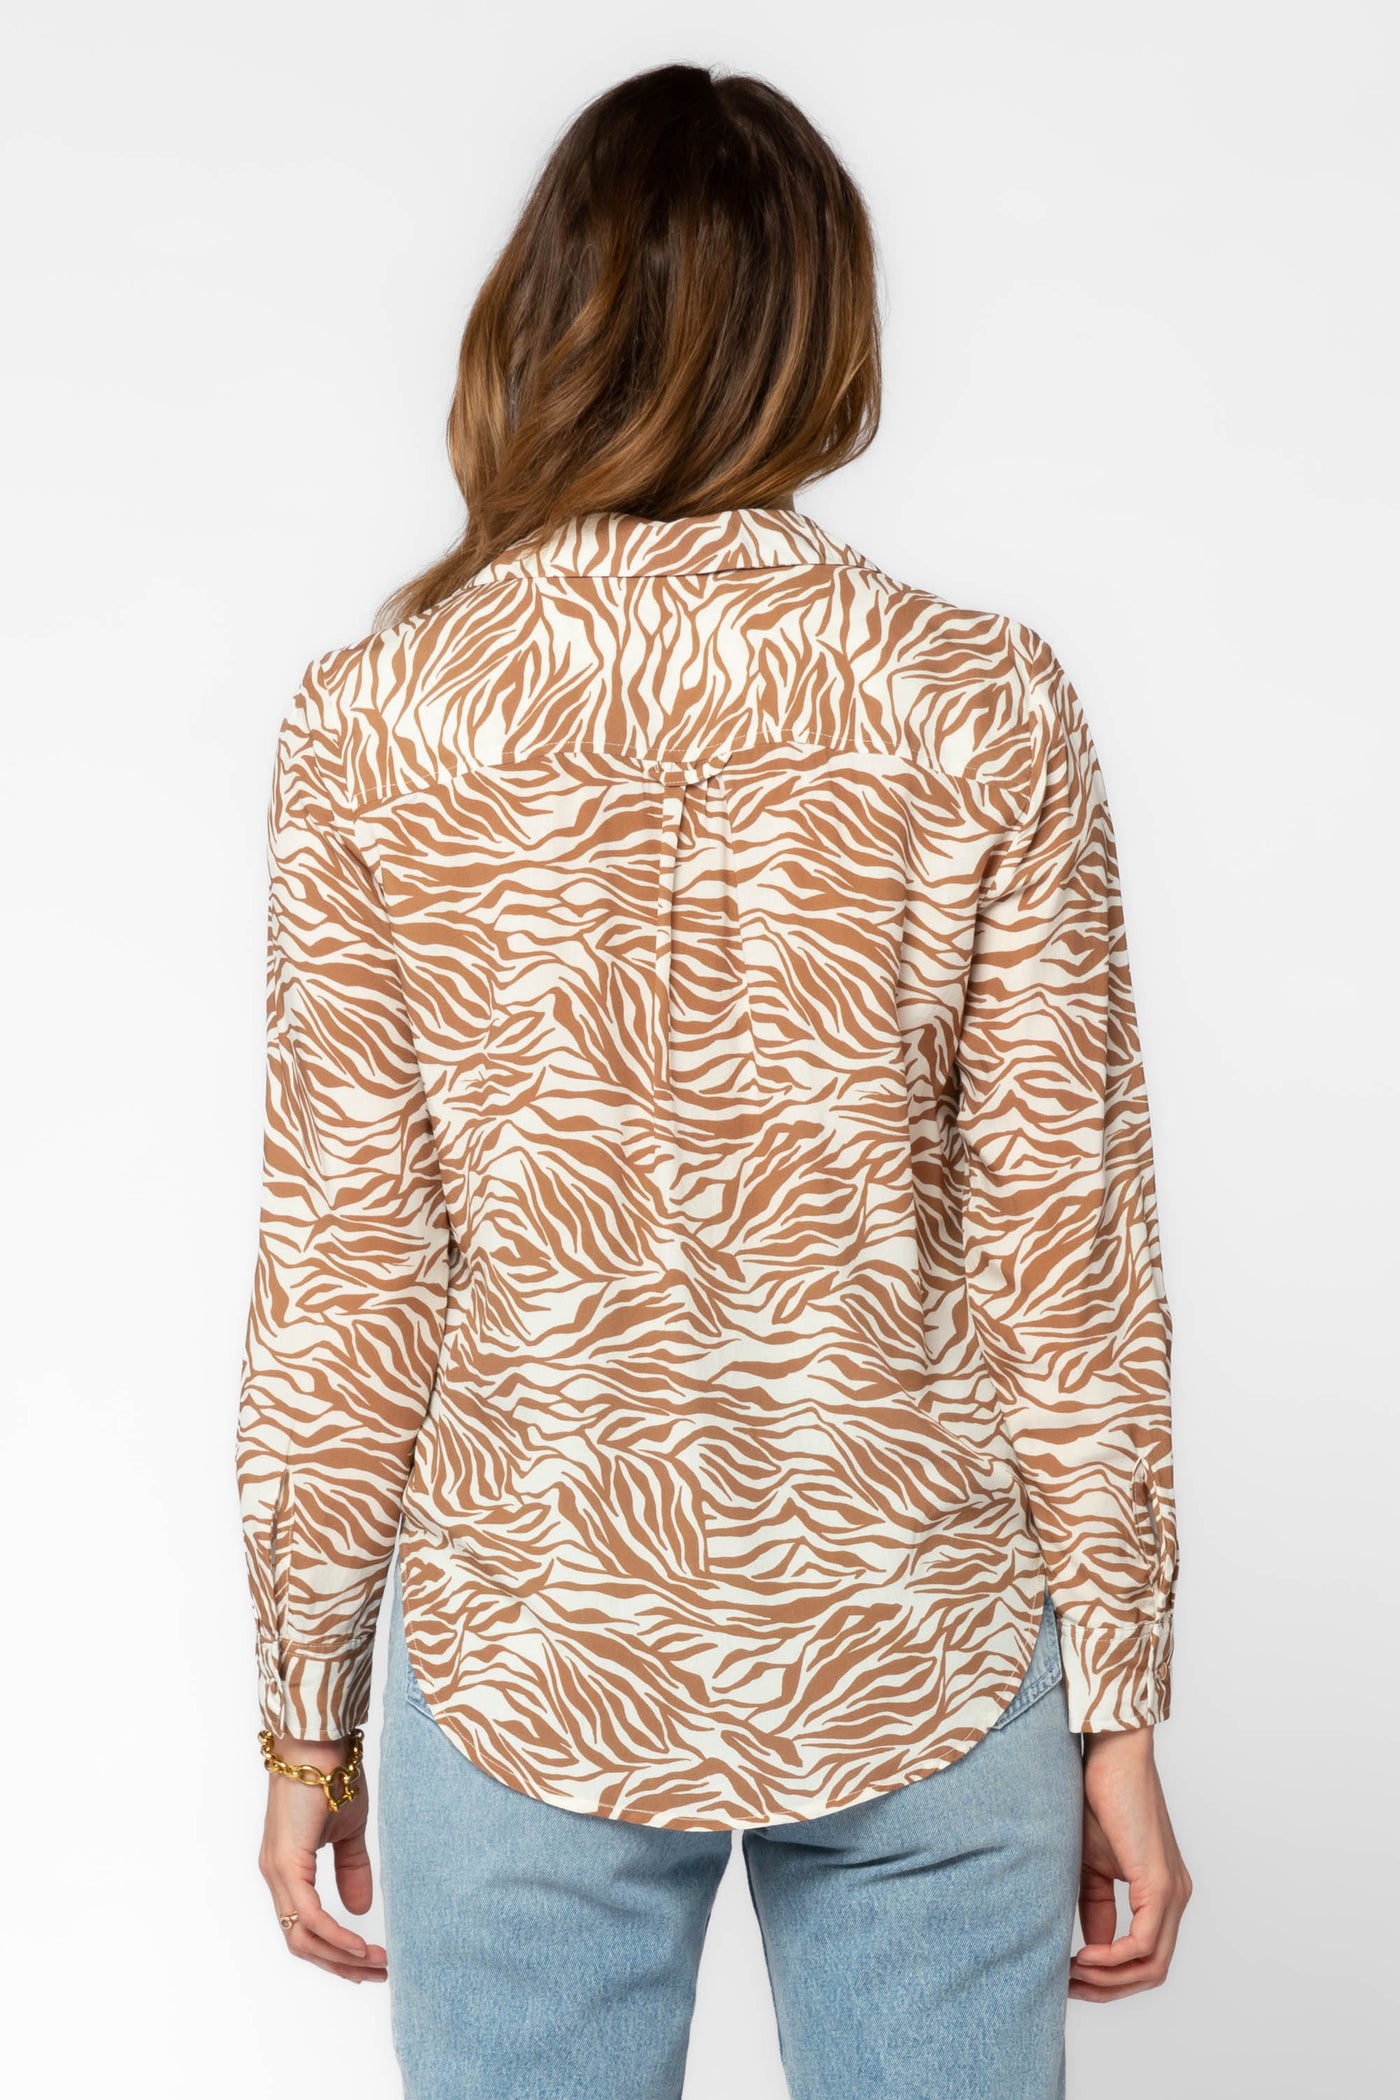 Eleni Zebra Shirt - Tops - Velvet Heart Clothing